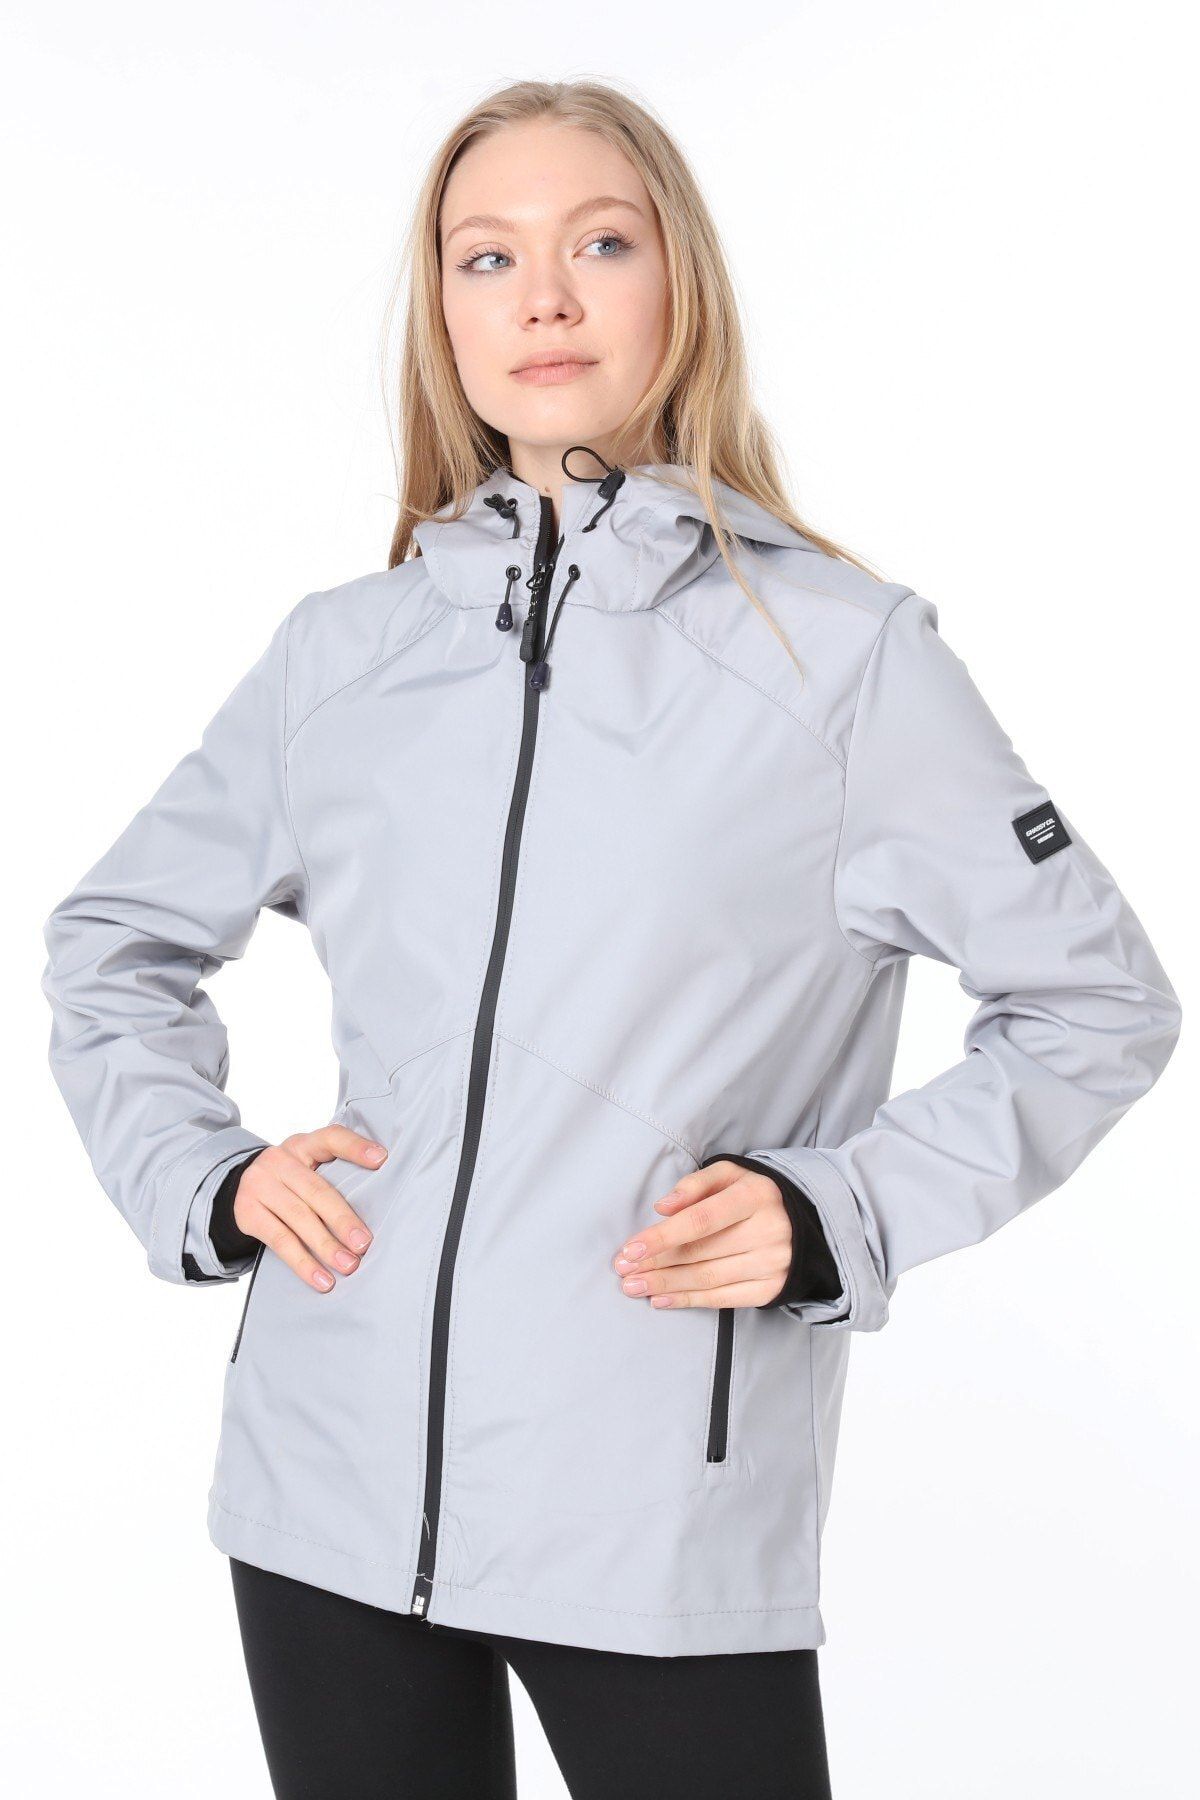 Ghassy Co Women's Windbreaker Raincoat Seasonal Gray Sports Jacket